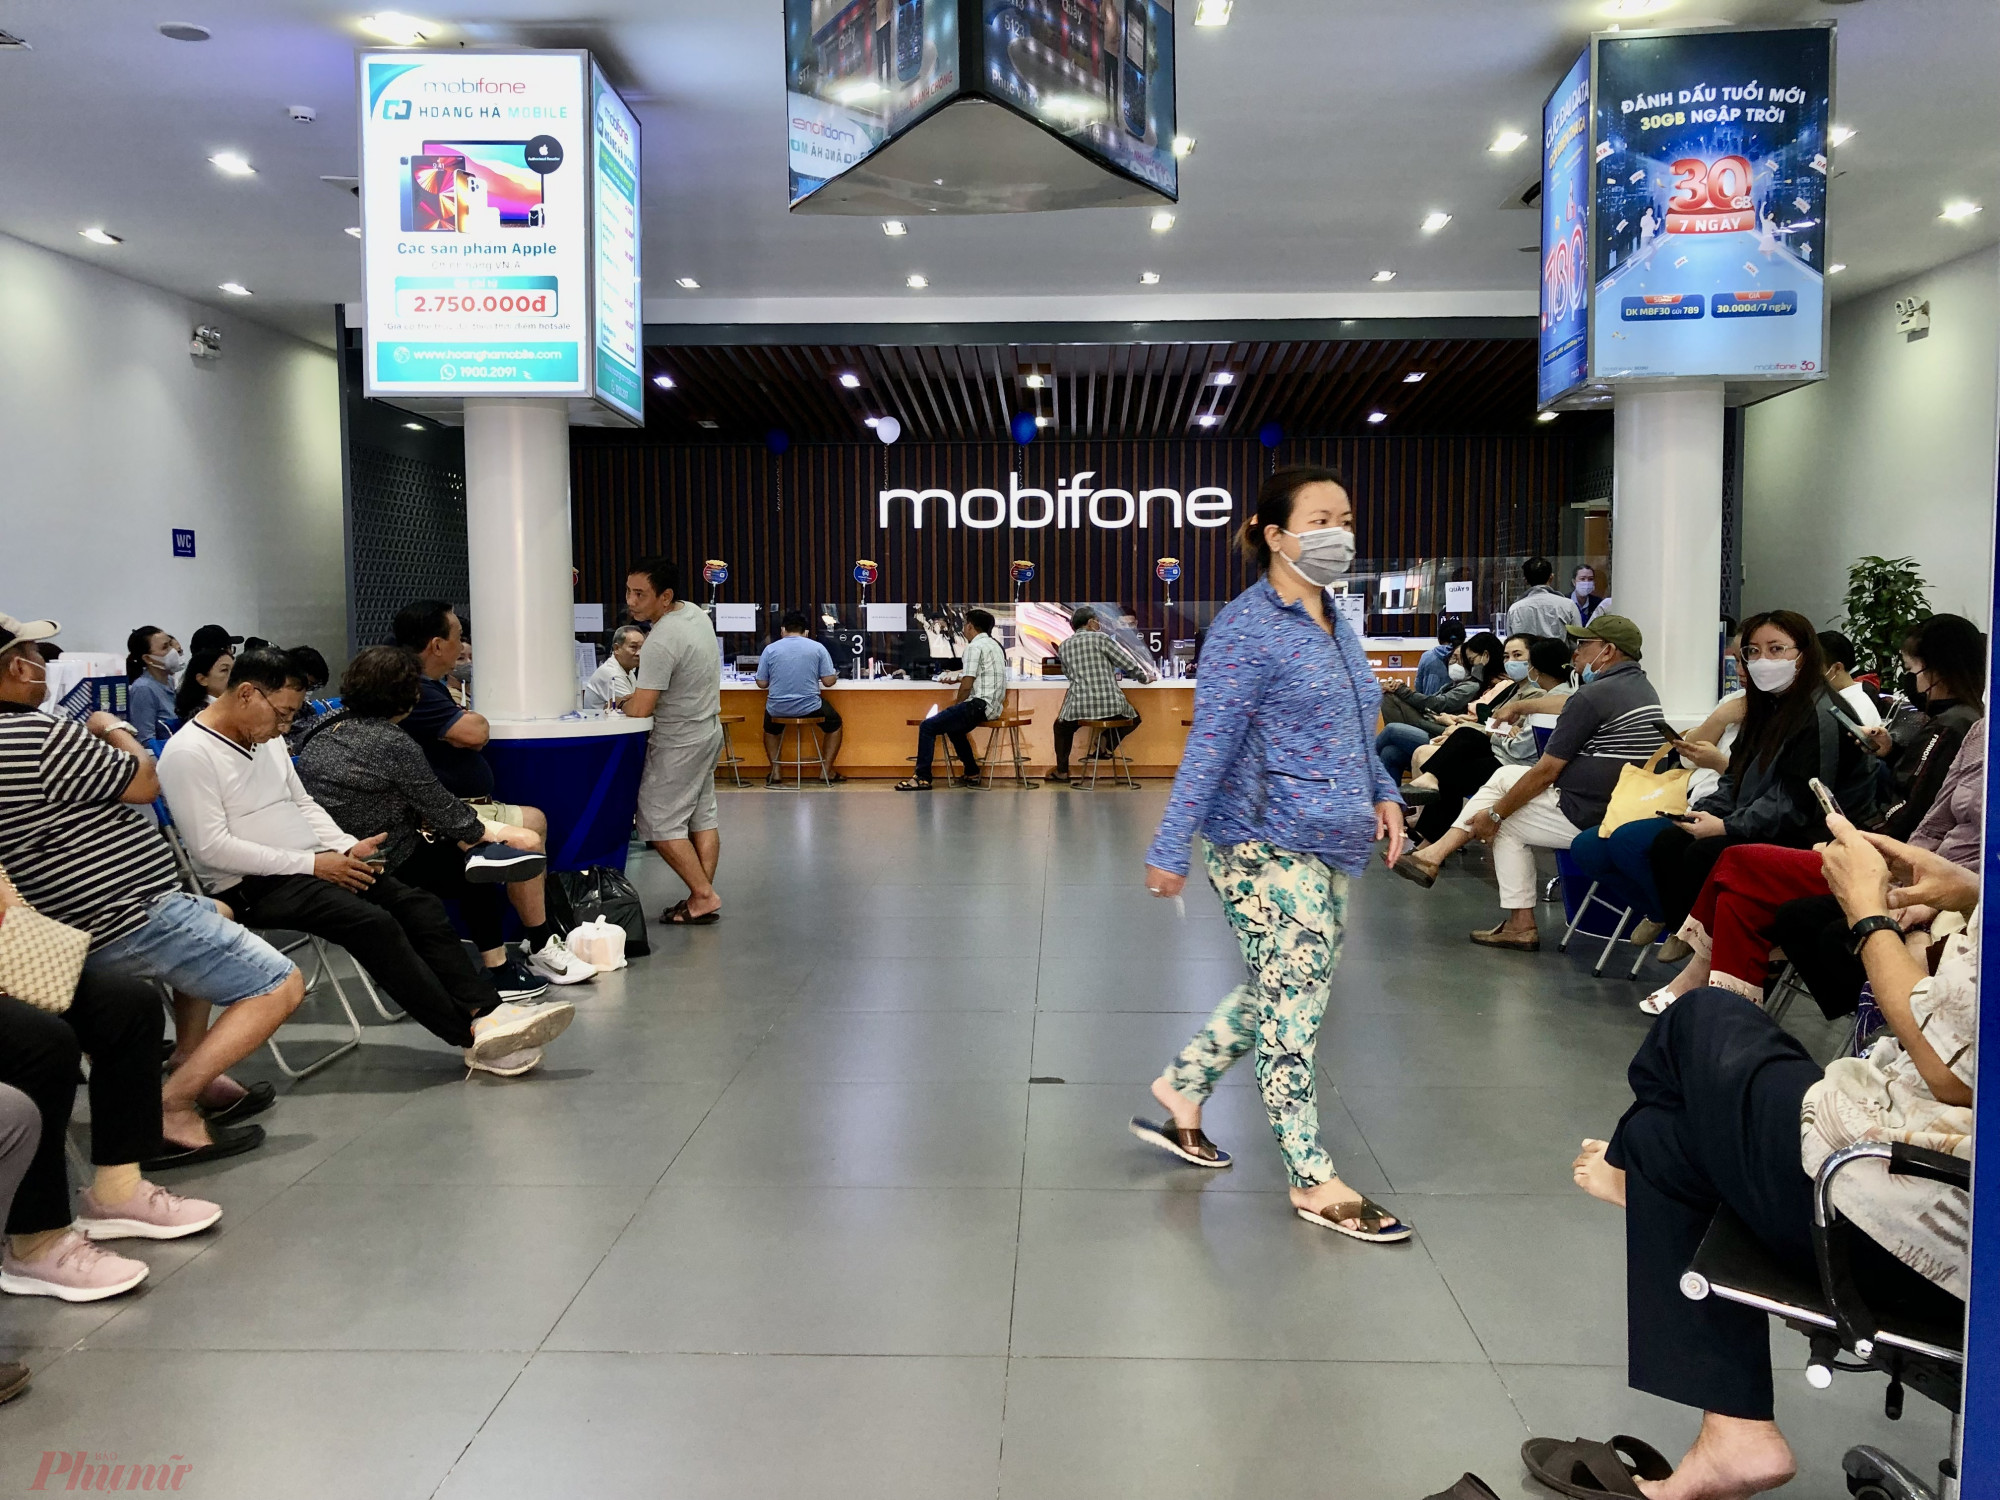 Lượng khách đến giao dịch tại cửa hàng Mobifone Hậu Giang rất đông.